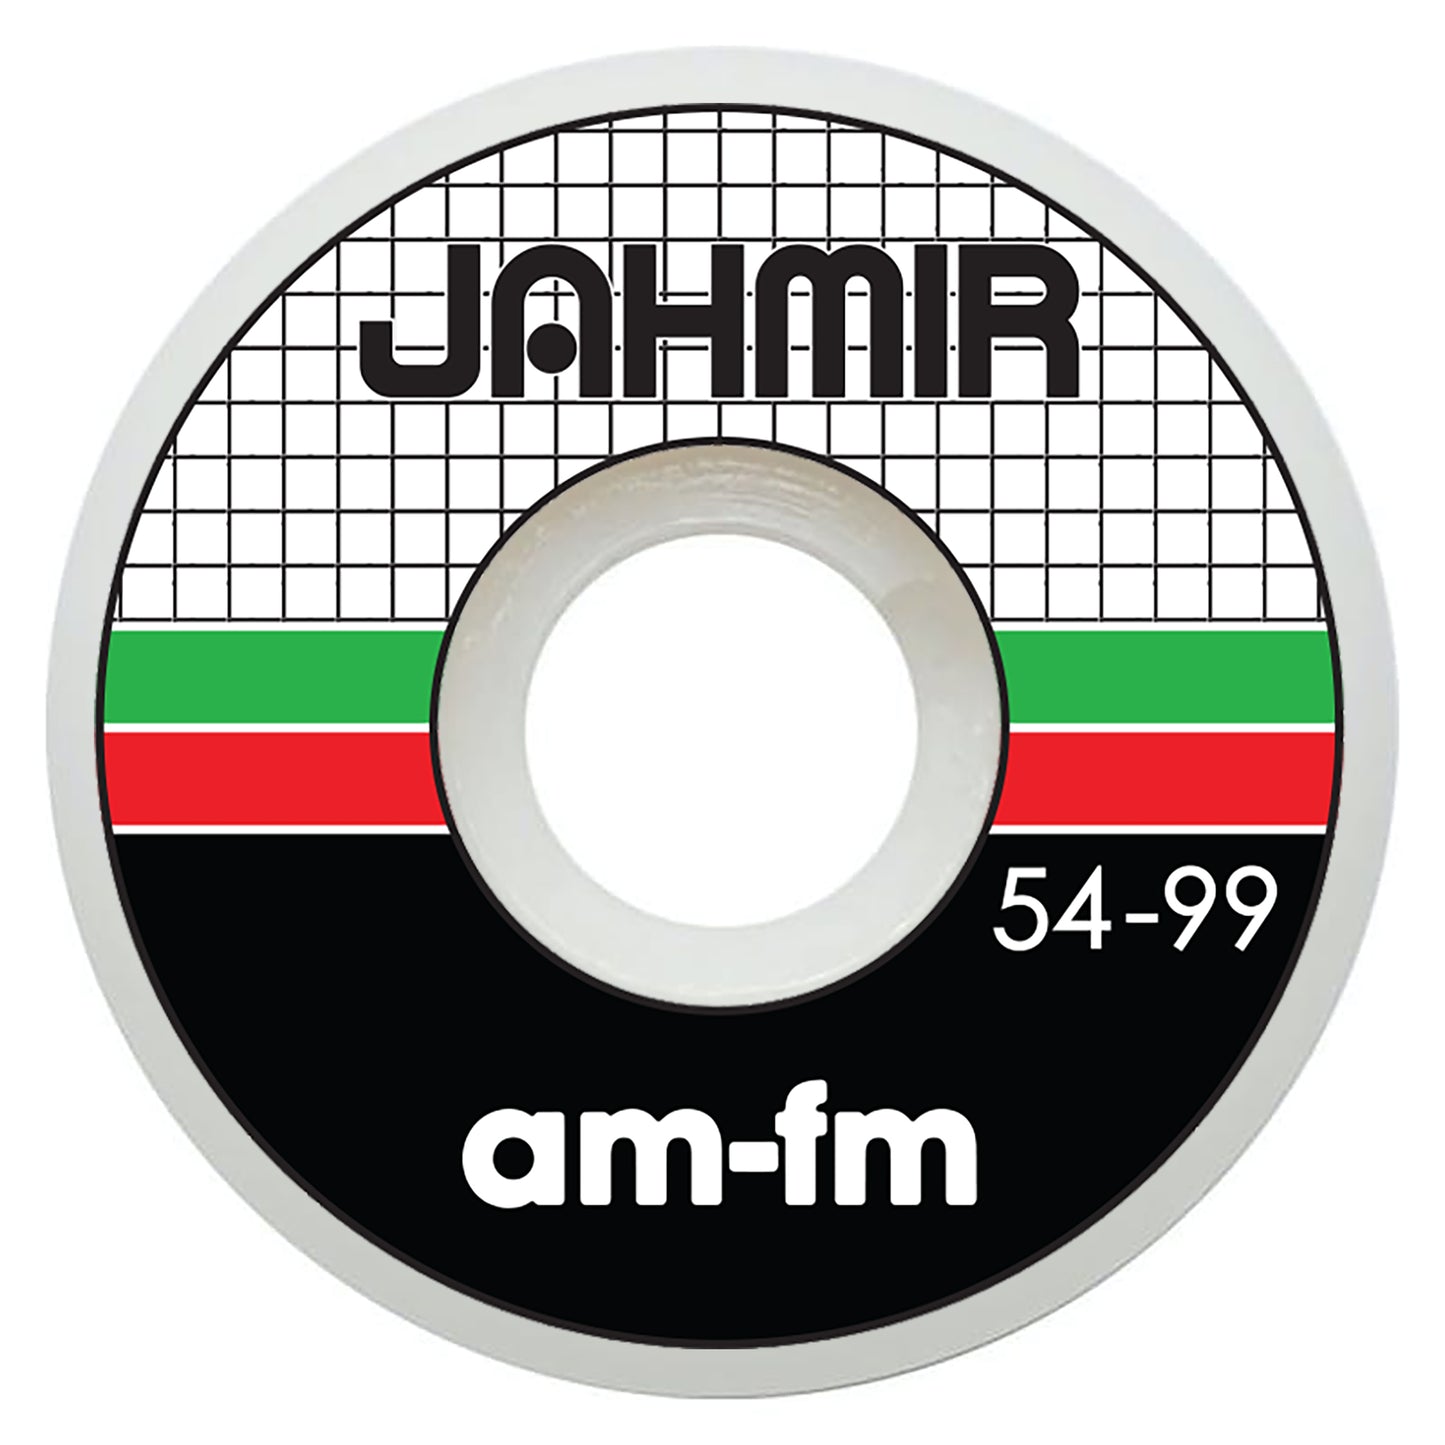 JAHMIR BROWN - 54mm